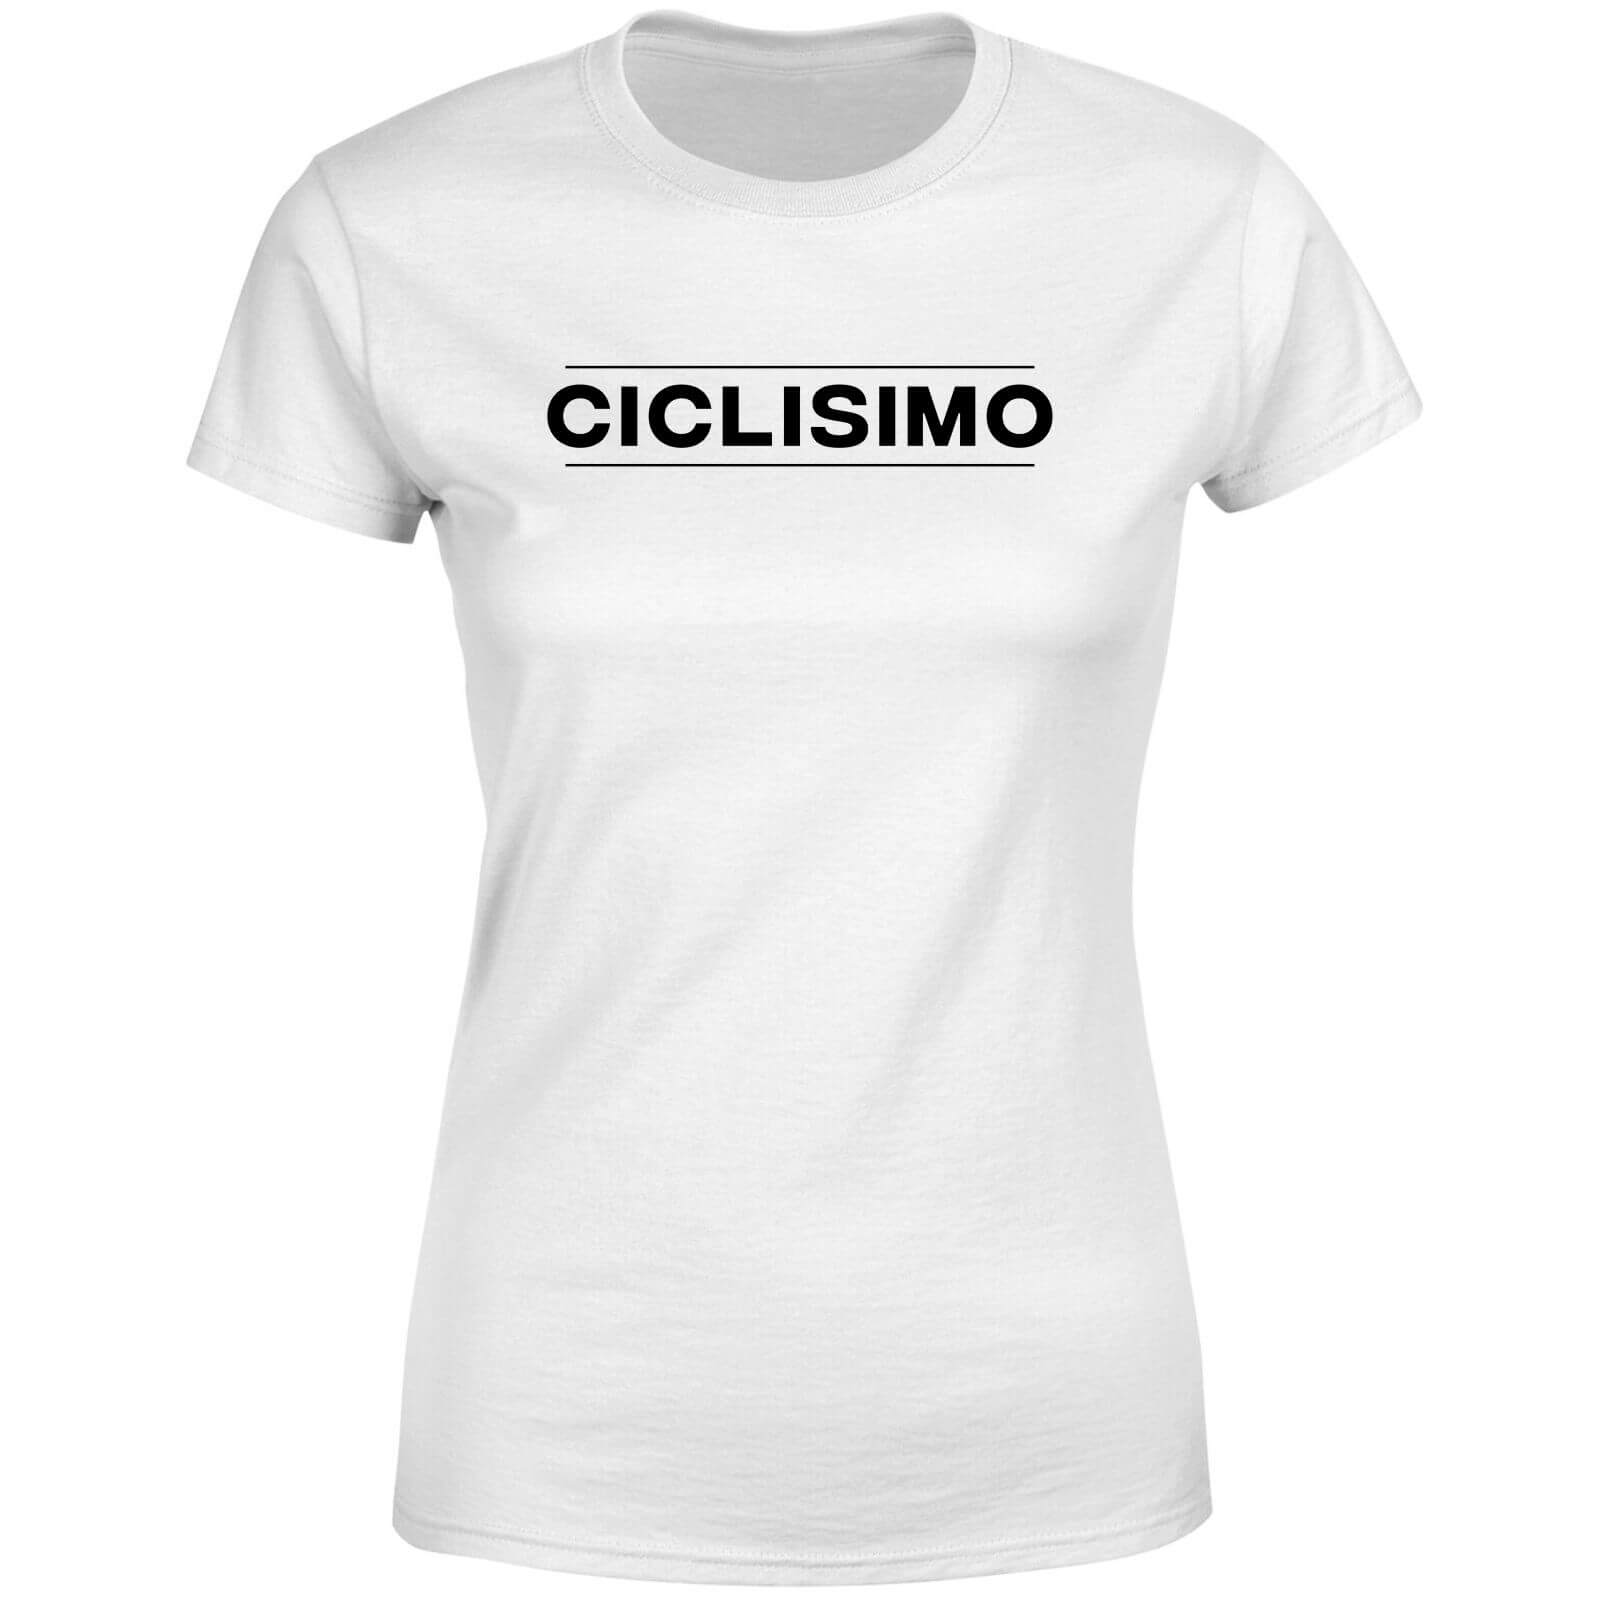 Ciclisimo Women's T-Shirt - White - 4XL - White